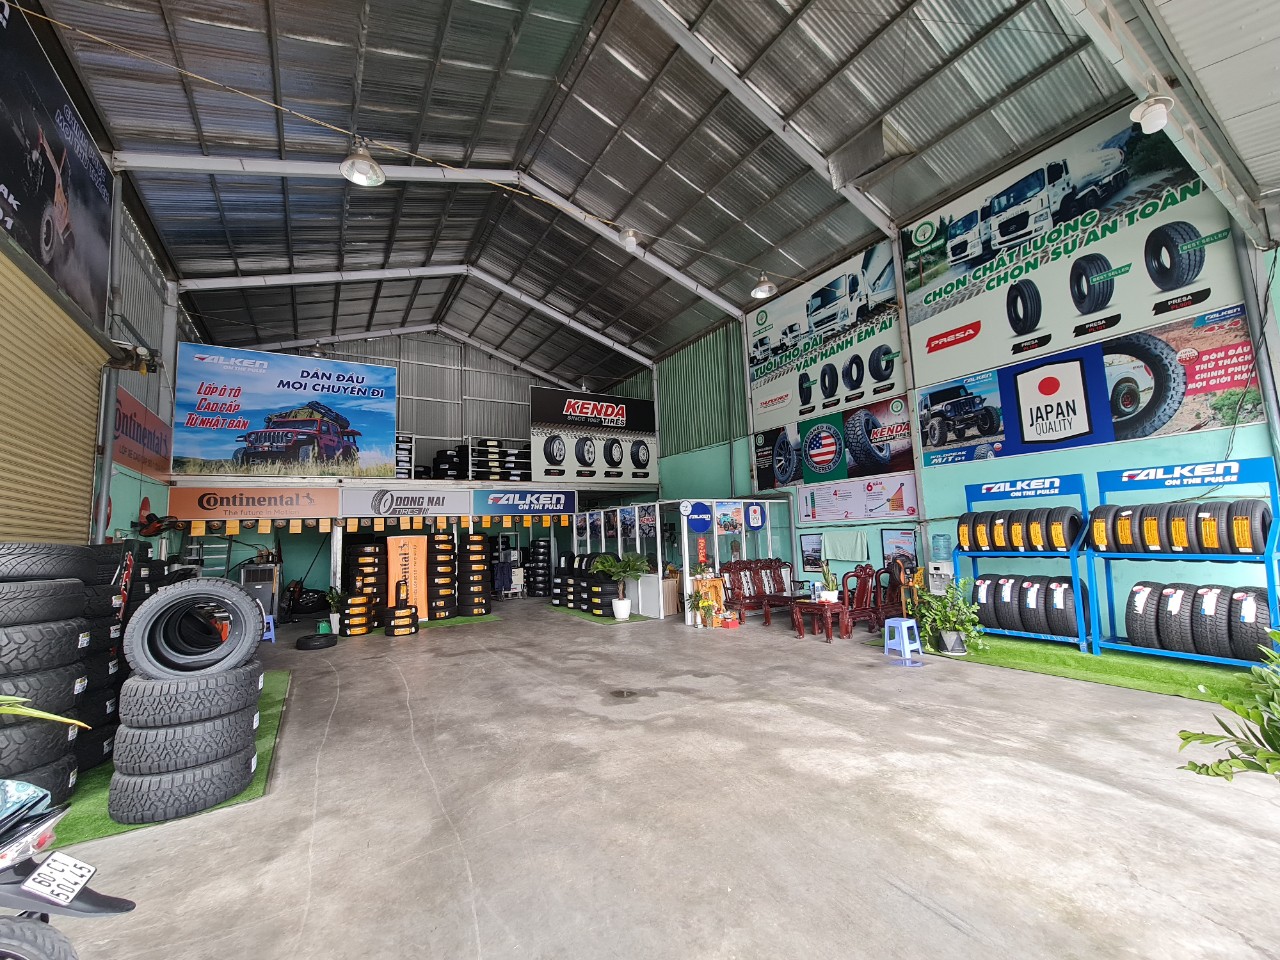 TƯ VẤN : Thay lốp xe KIA SORENTO chính hãng - giá tốt ở Biên Hoà, Đồng Nai.